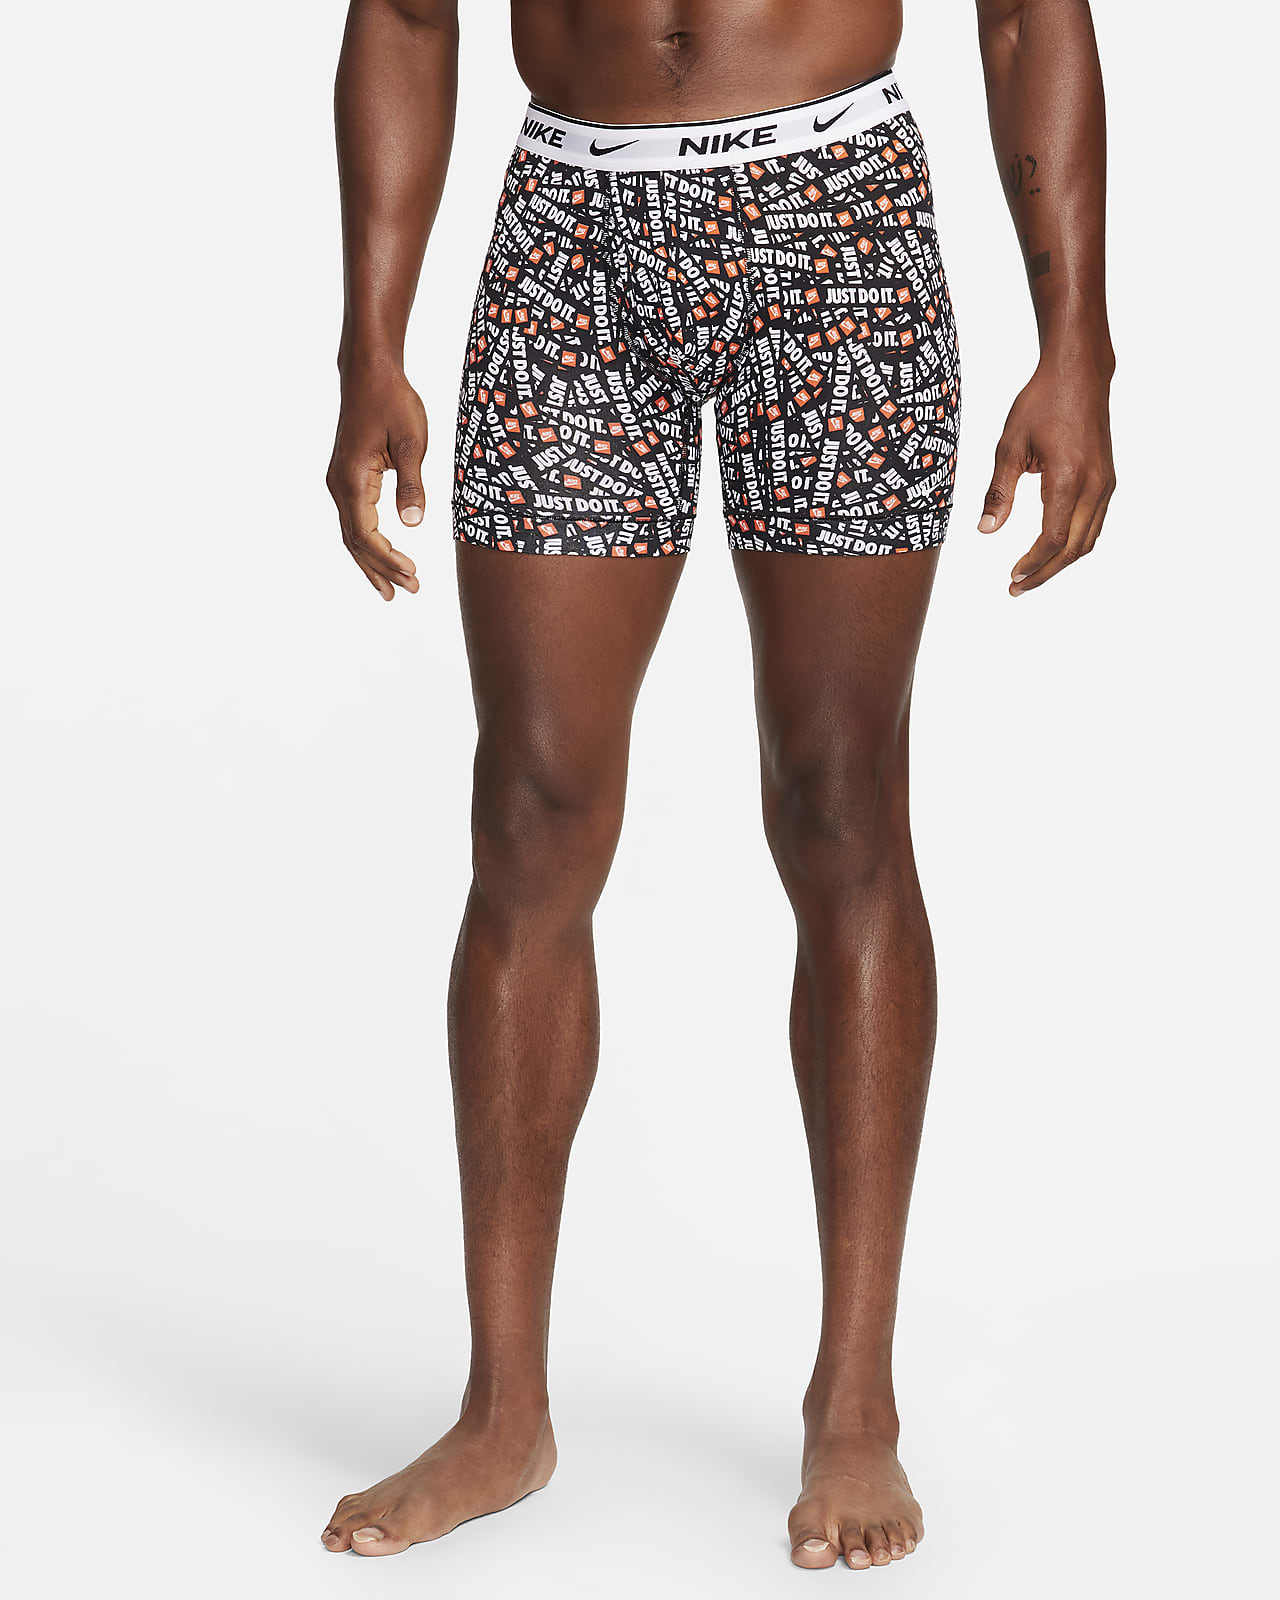 Nike Men's 3-Pack Dri-FIT Essential Cotton Stretch Boxer Briefs Underwear XL